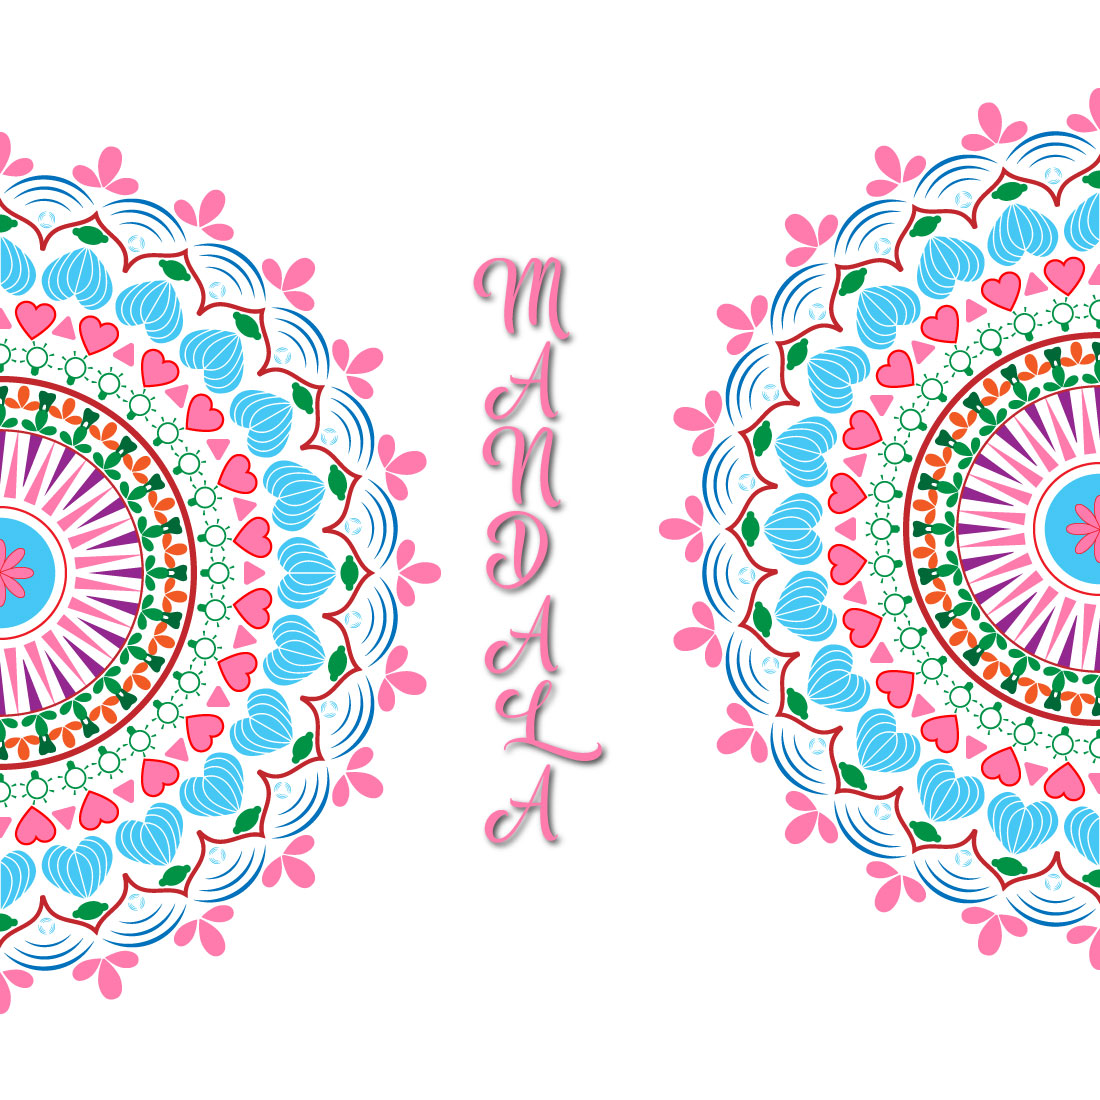 Floral Mandala Design preview image.